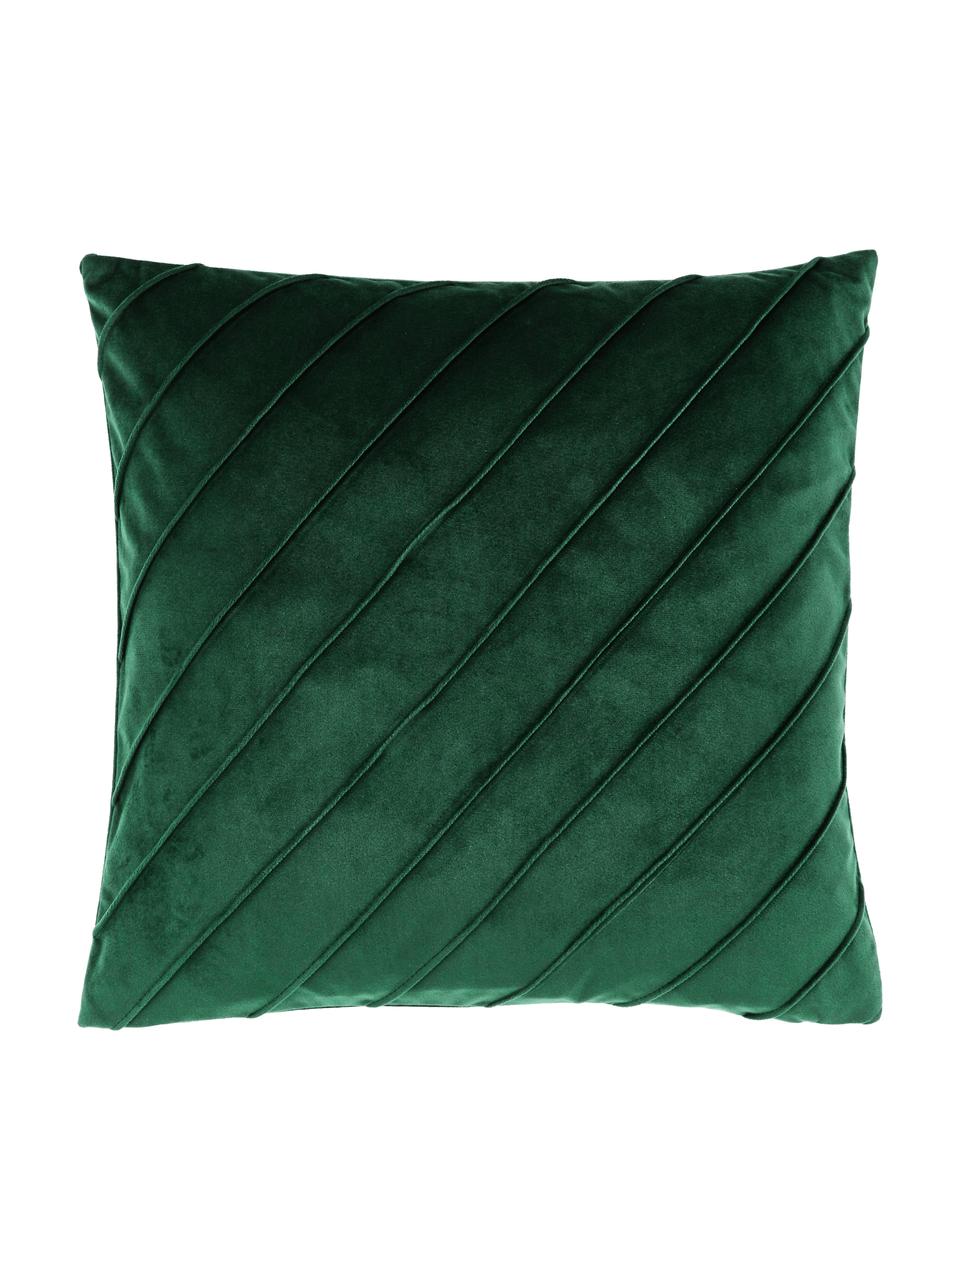 Federa arredo in velluto verde scuro con motivo strutturato Leyla, Velluto (100% poliestere), Verde, Larg. 50 x Lung. 50 cm